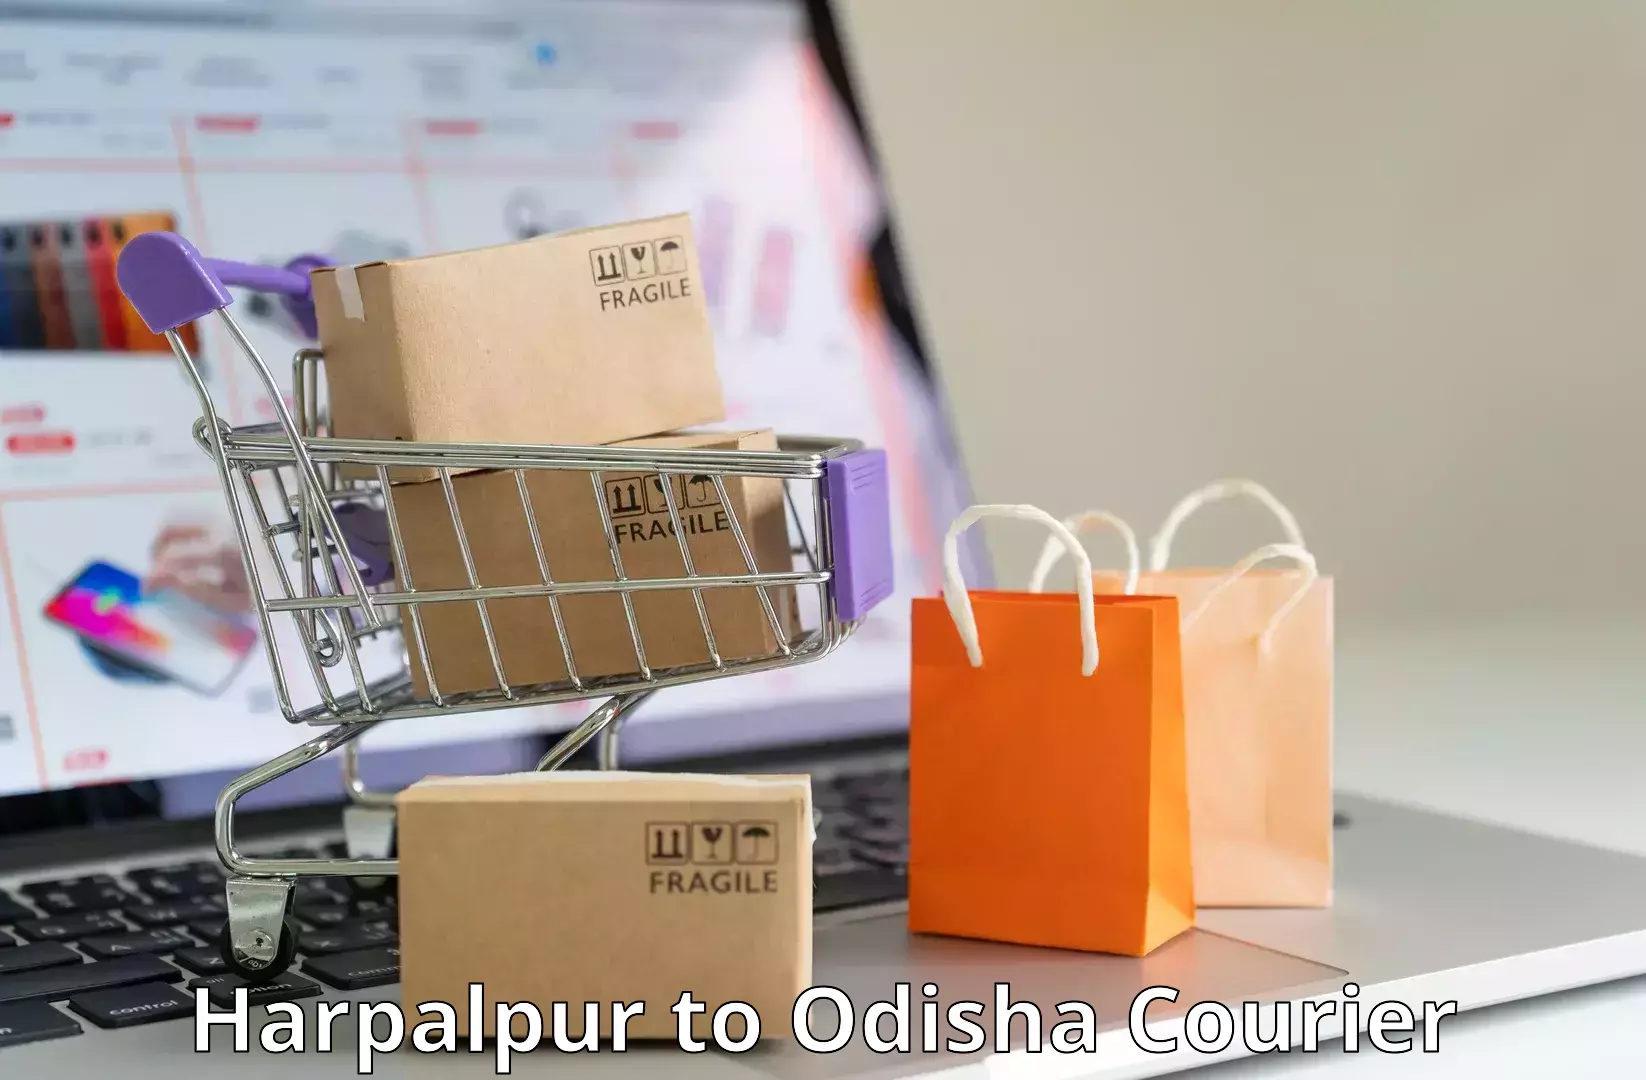 Package consolidation in Harpalpur to Muniguda